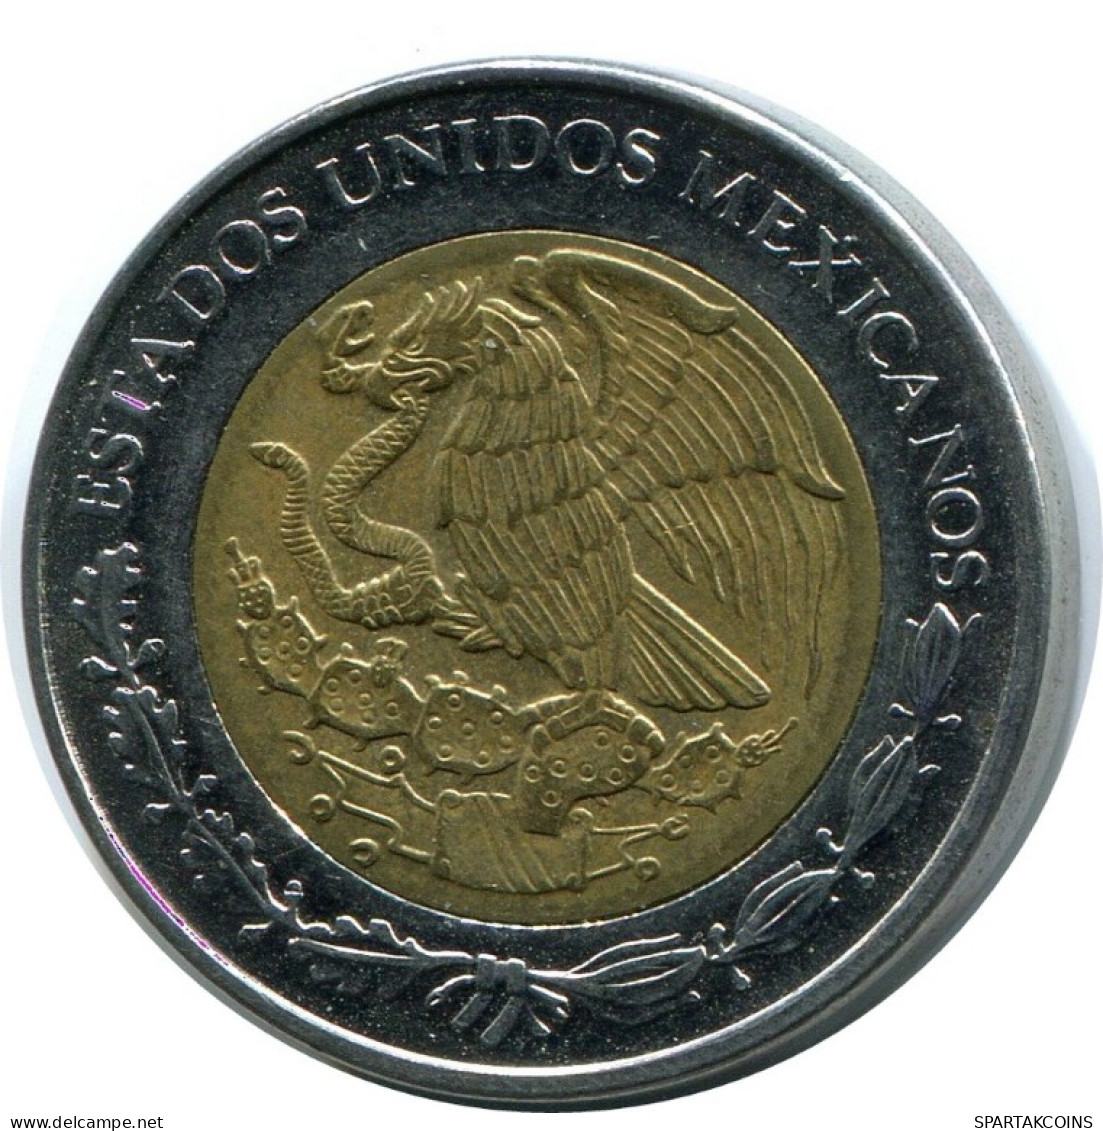 1 PESO 2000 MEXICO Coin #AH501.5.U.A - Mexiko